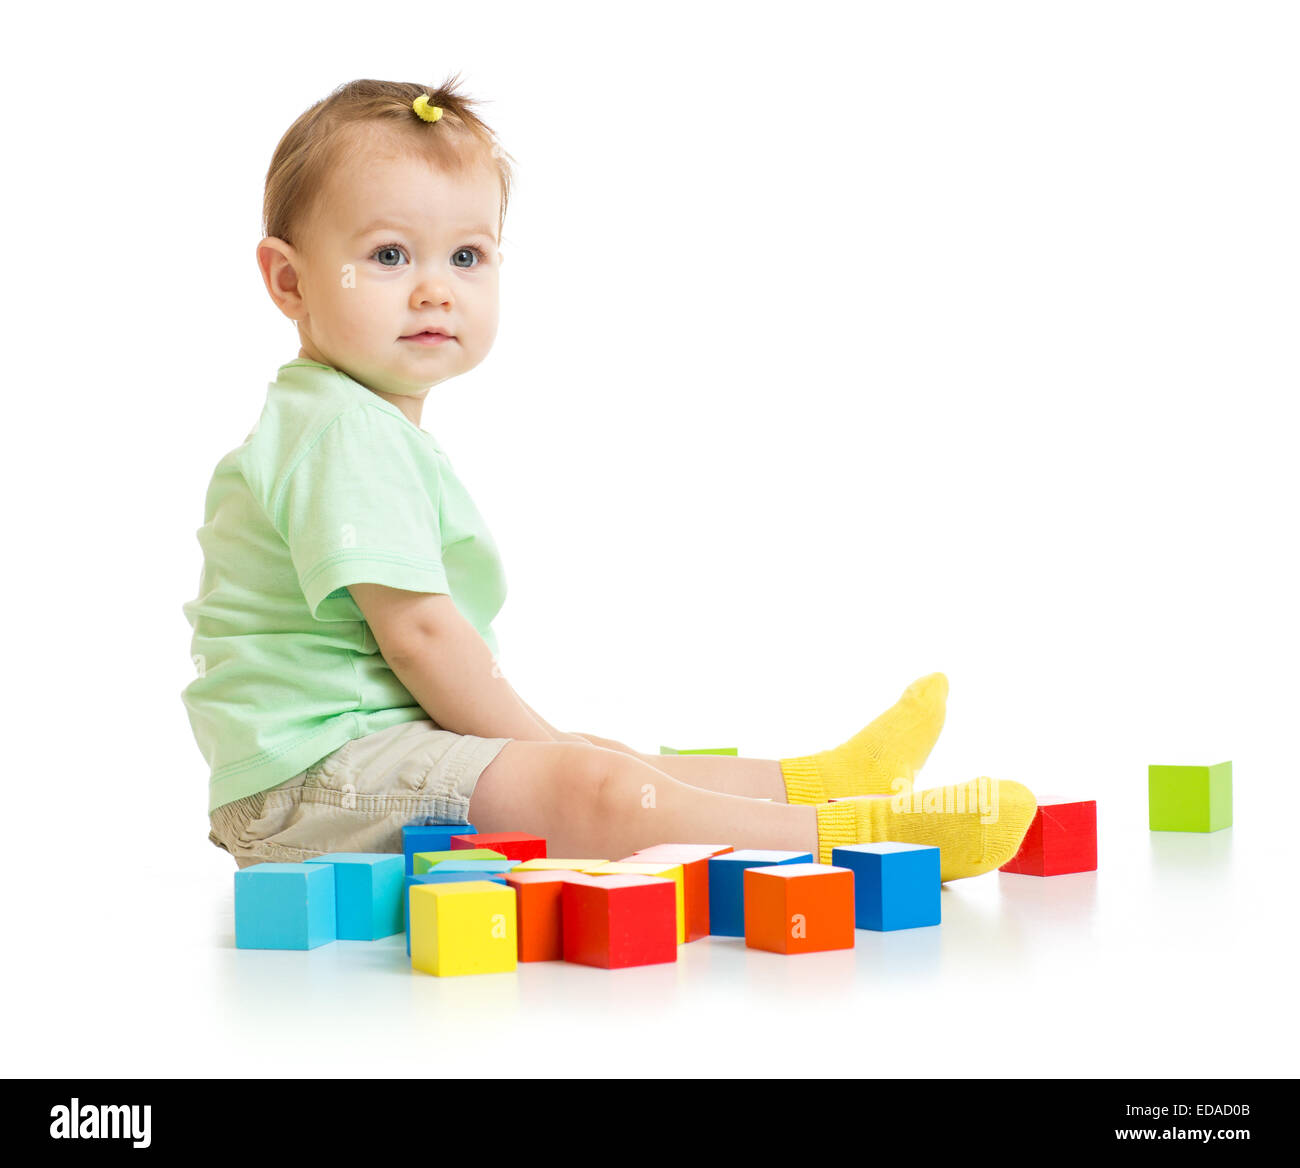 Bébé jouant avec des blocs colorés isolé Banque D'Images